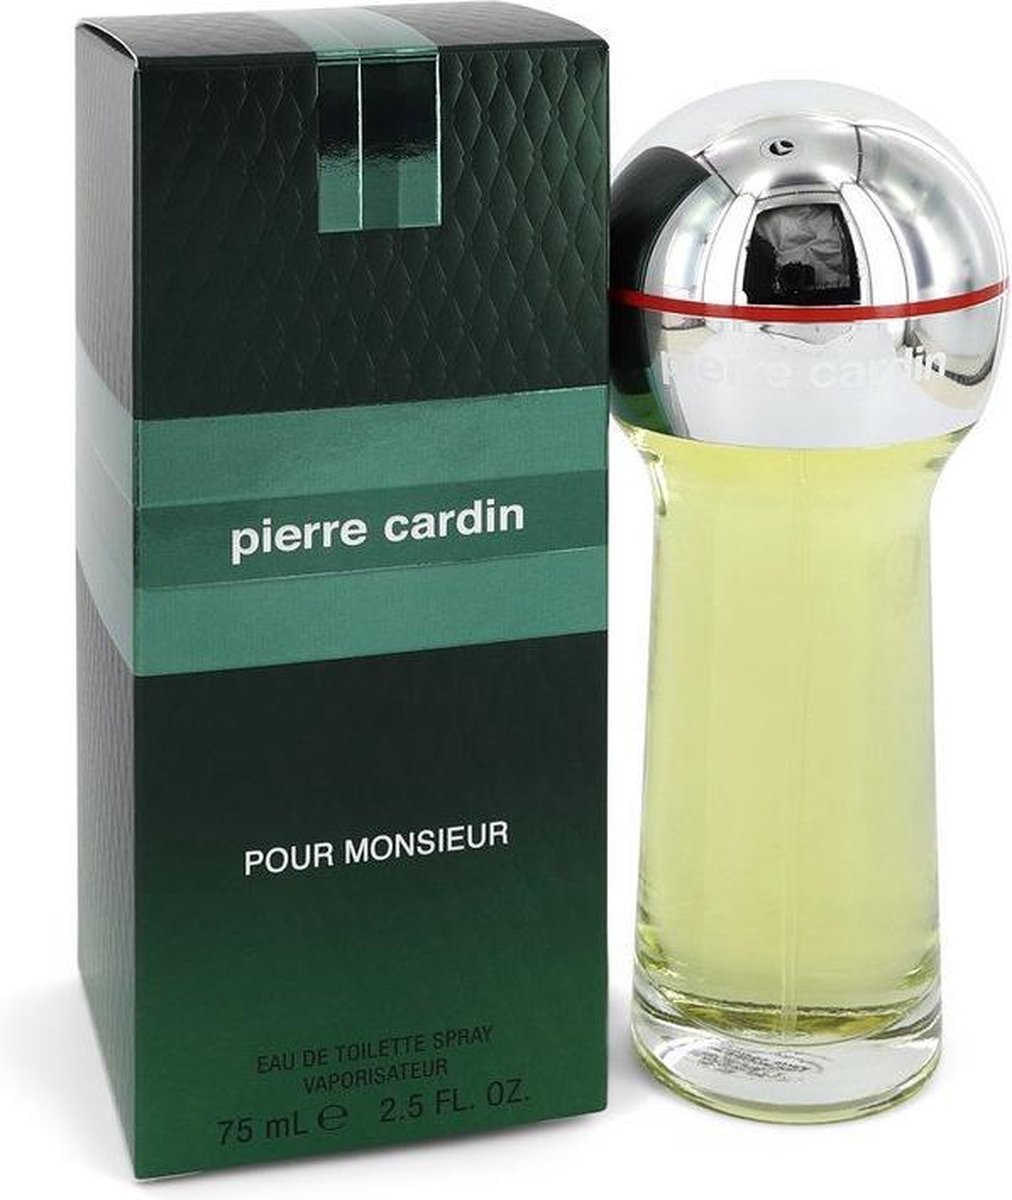 Pierre Cardin Pour Monsieur - Eau de toilette spray - 75 ml